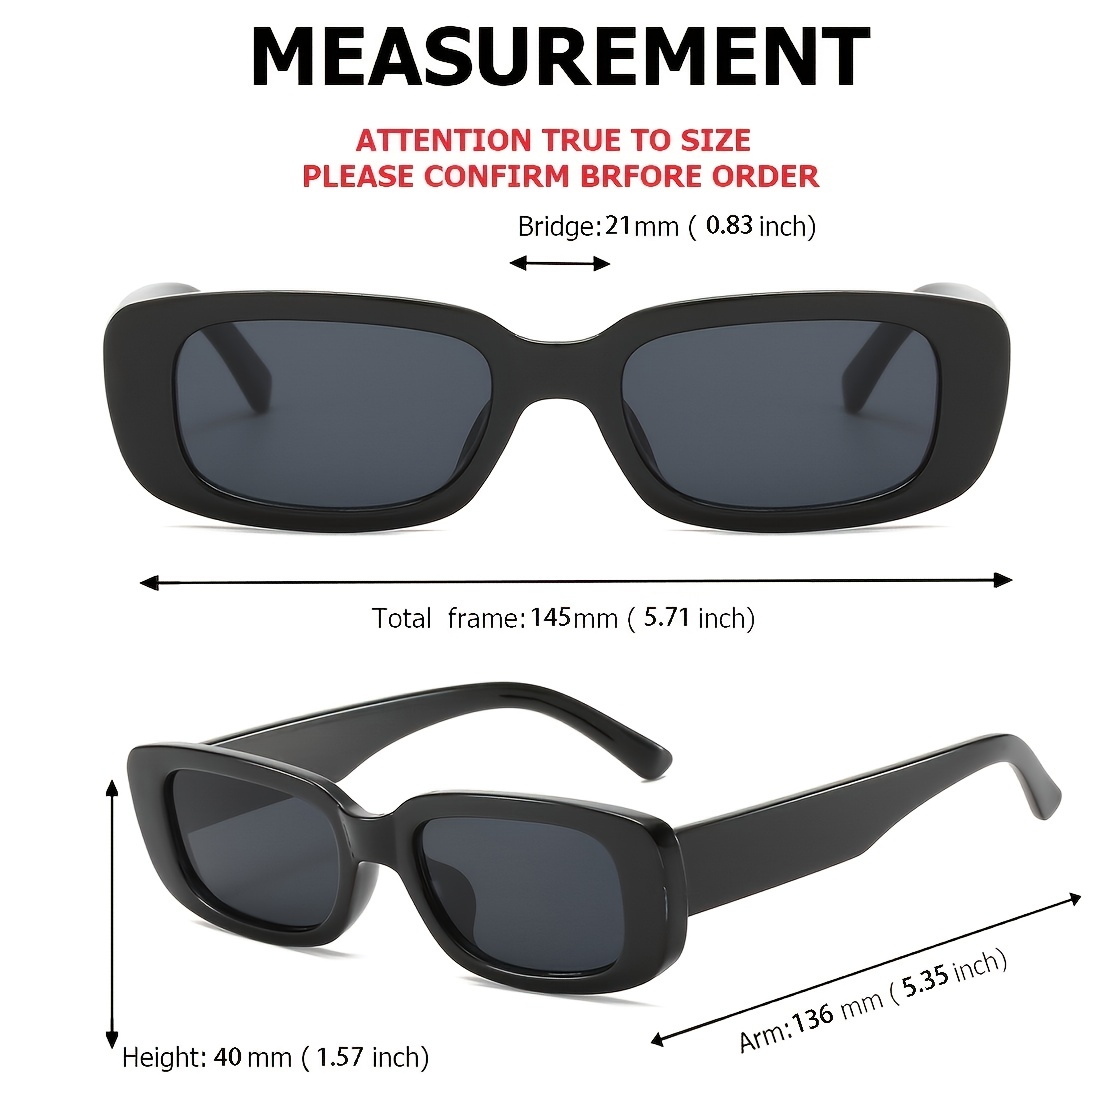 Retro Square Sun Glasses Classic Travel Small Rectangle Sunglasses Men UV400